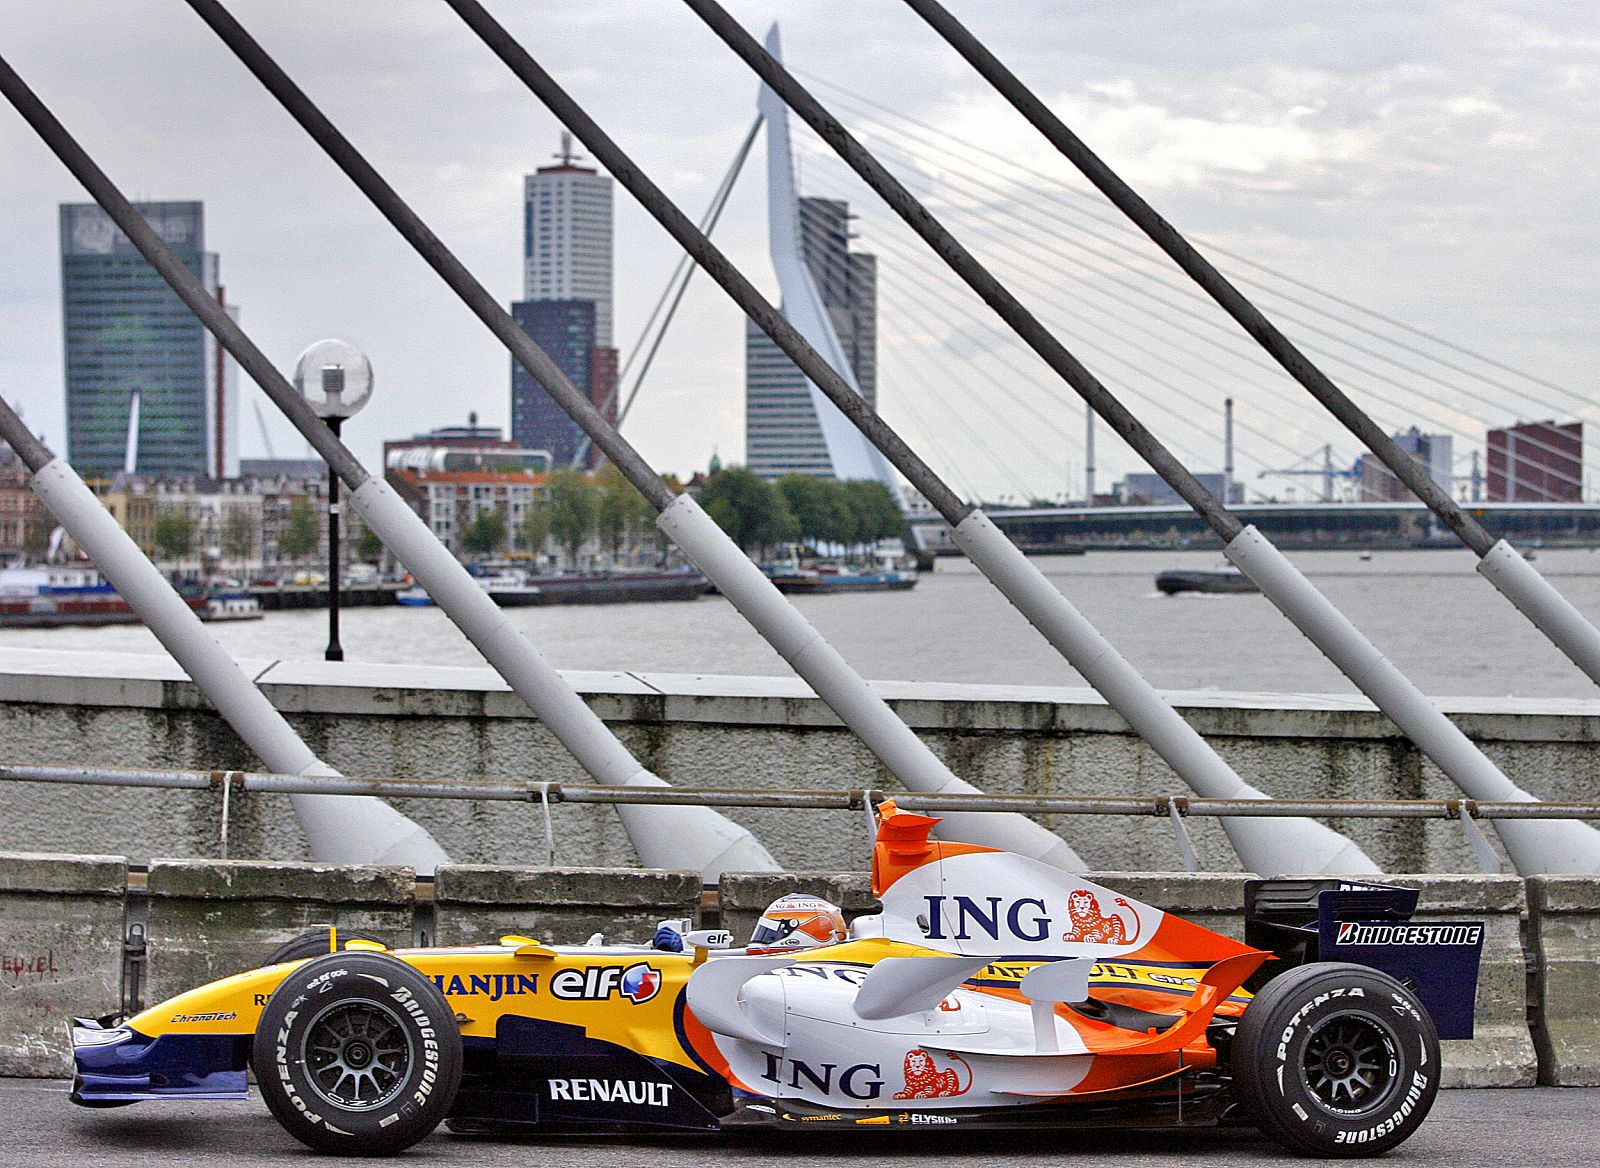 ING abandonará el patrocinio de Renault la próxima temporada.